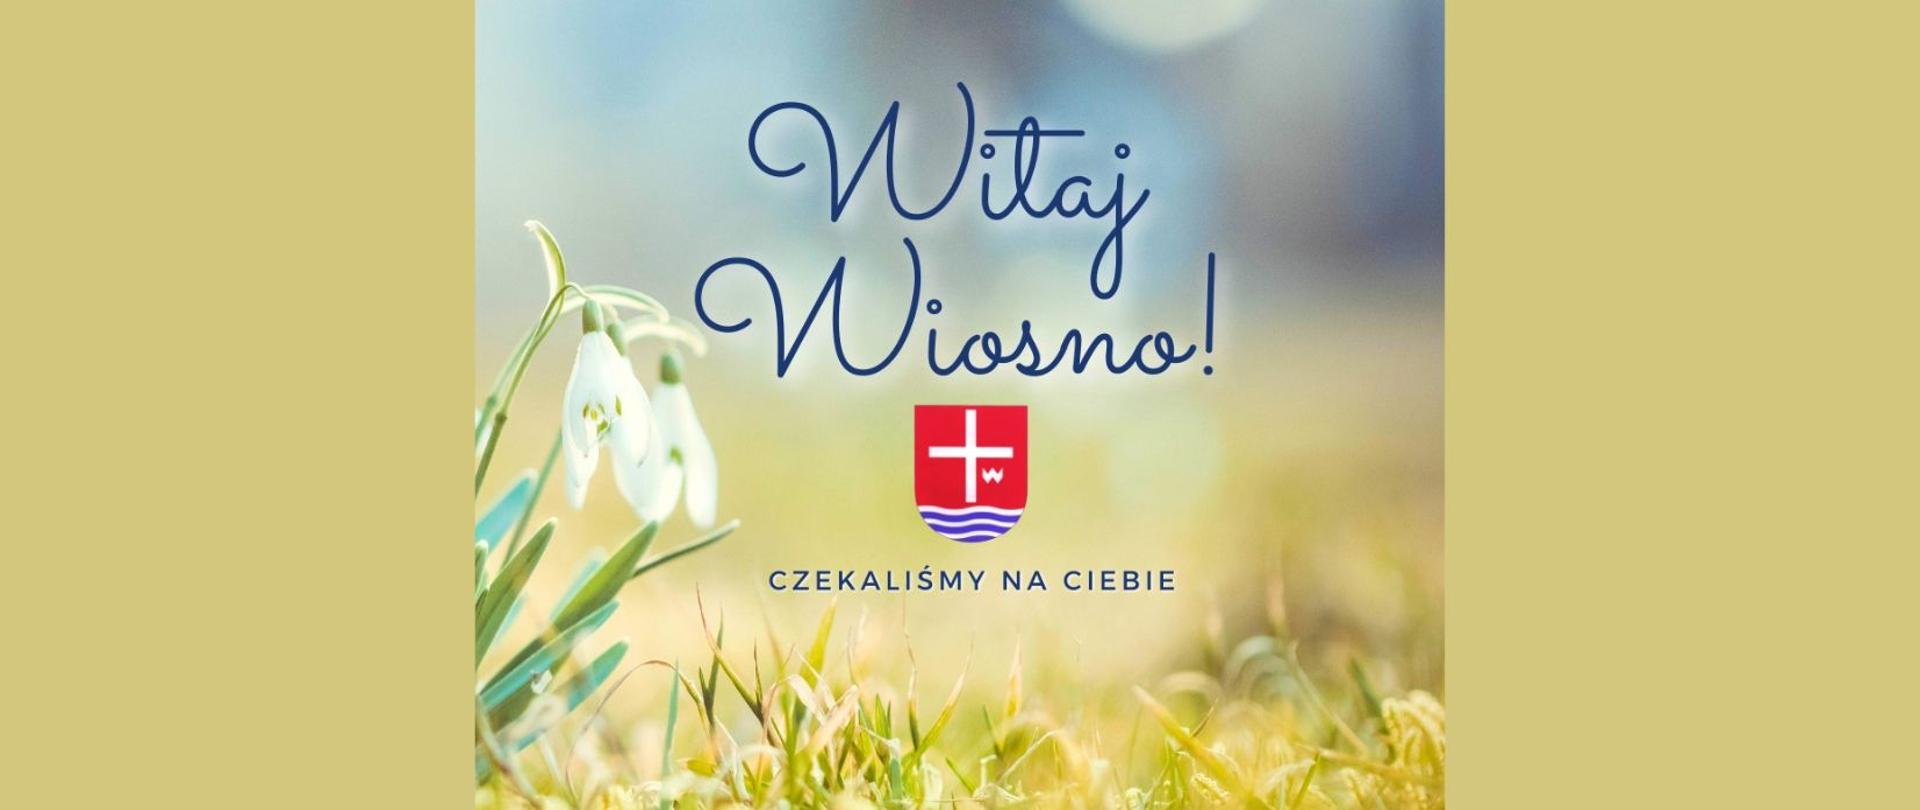 Napis "Witaj Wiosno" i "Czekaliśmy na Ciebie" oraz herb powiatu lipskiego. W tle zdjęcie z z wiosennym kwiatem.